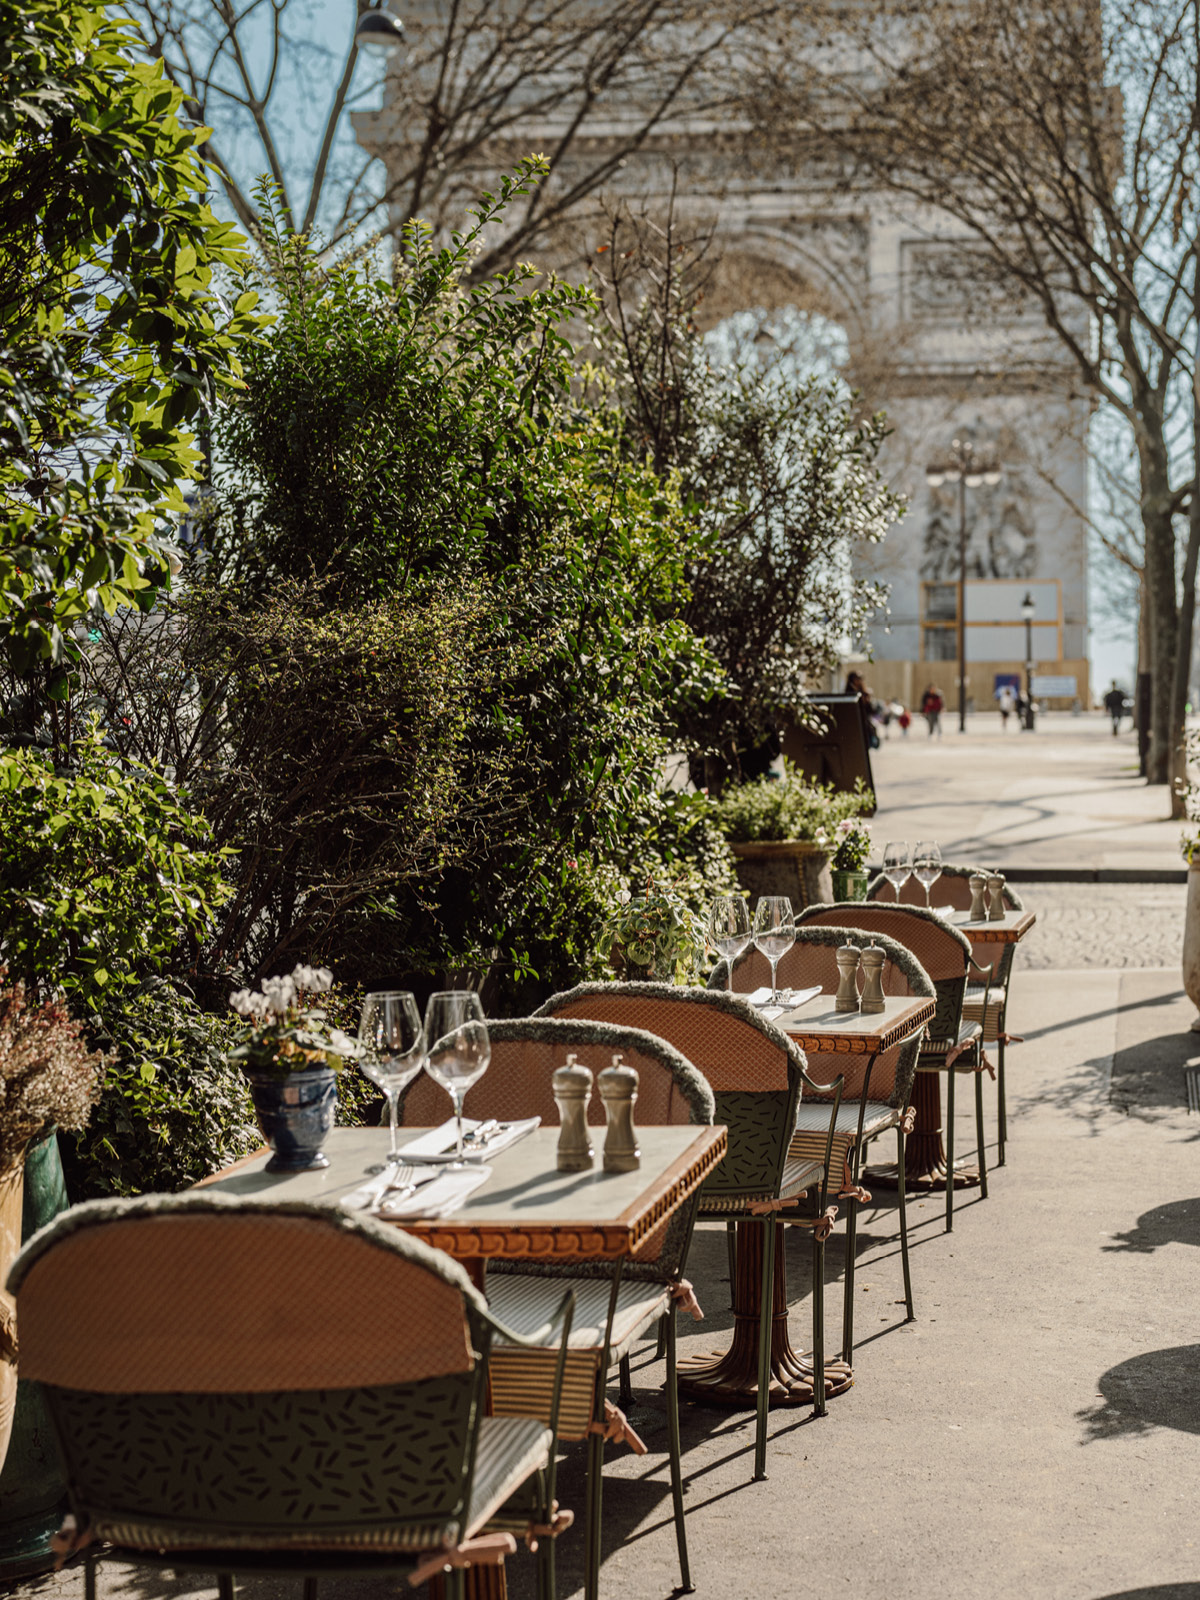 Les jardins du presbourg restaurant paris terrasse arc de triomphe